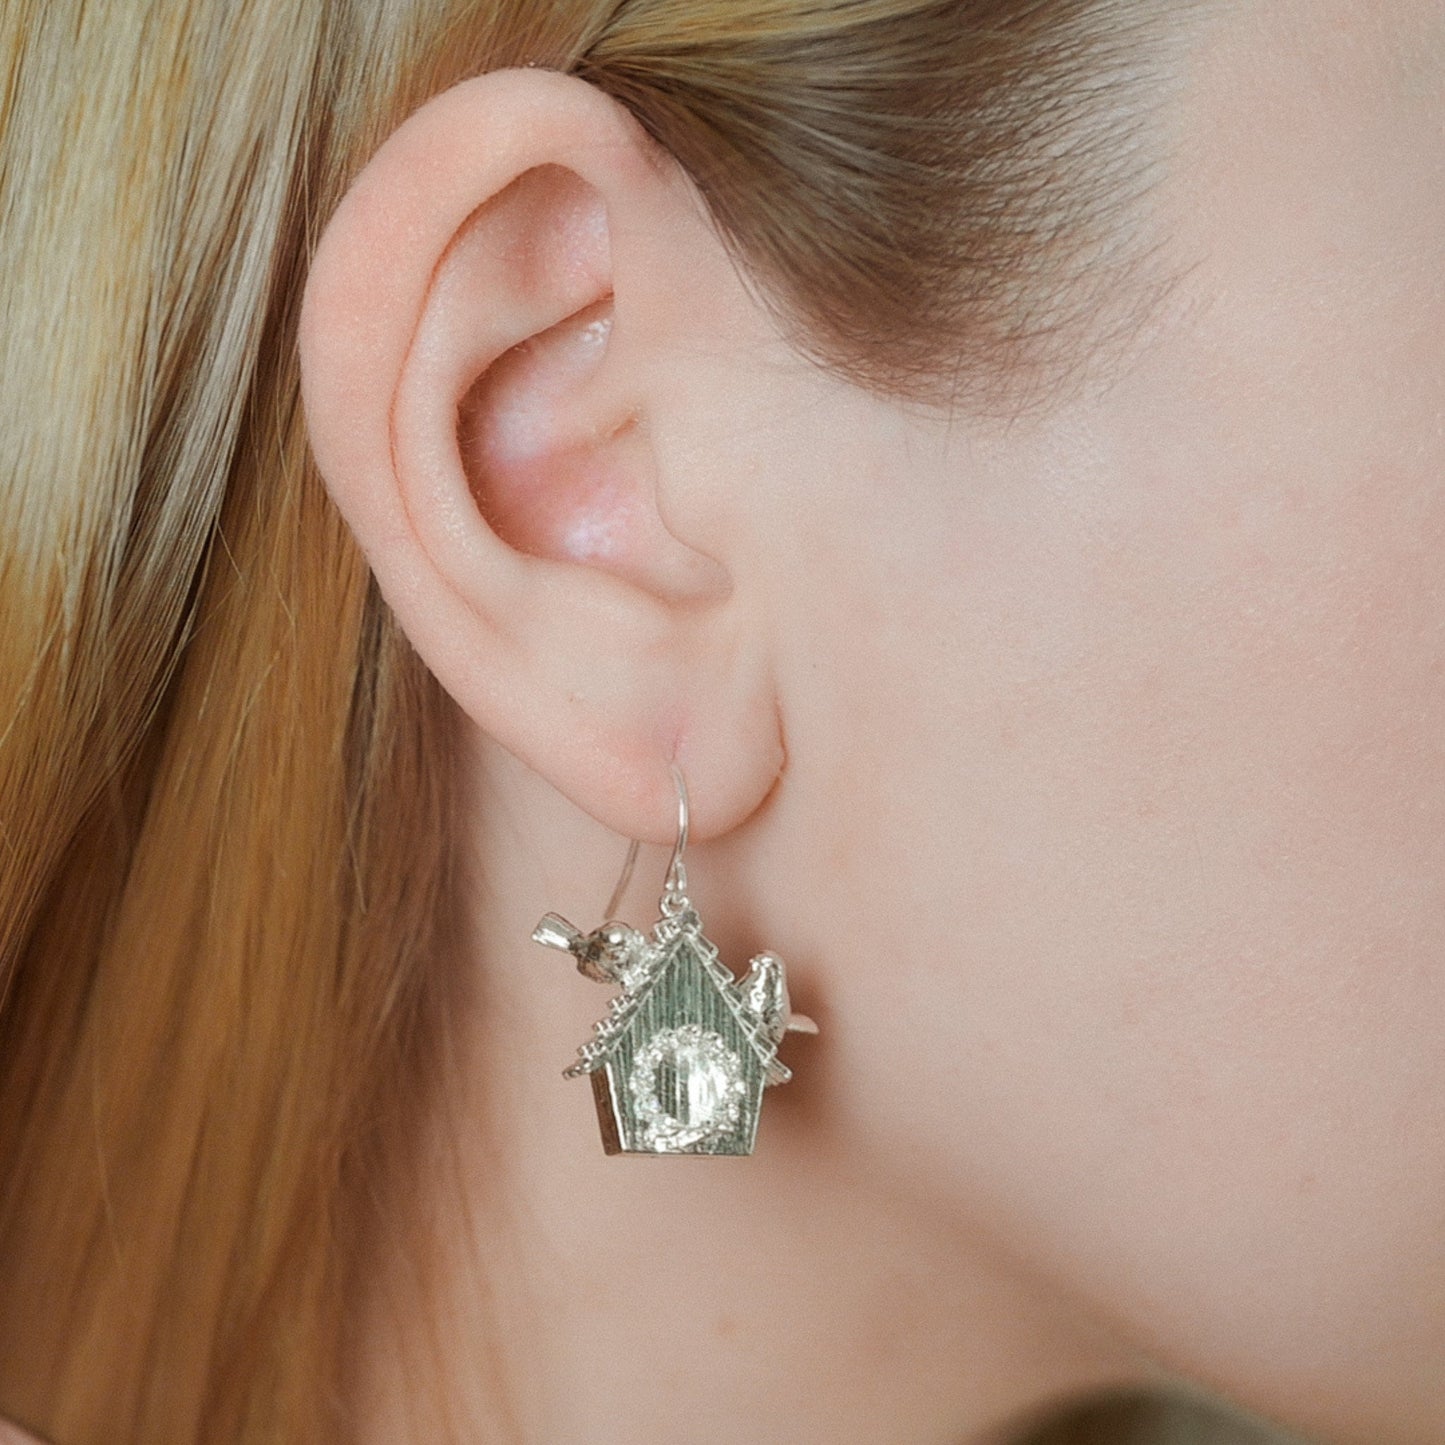 Birdhouse Earrings